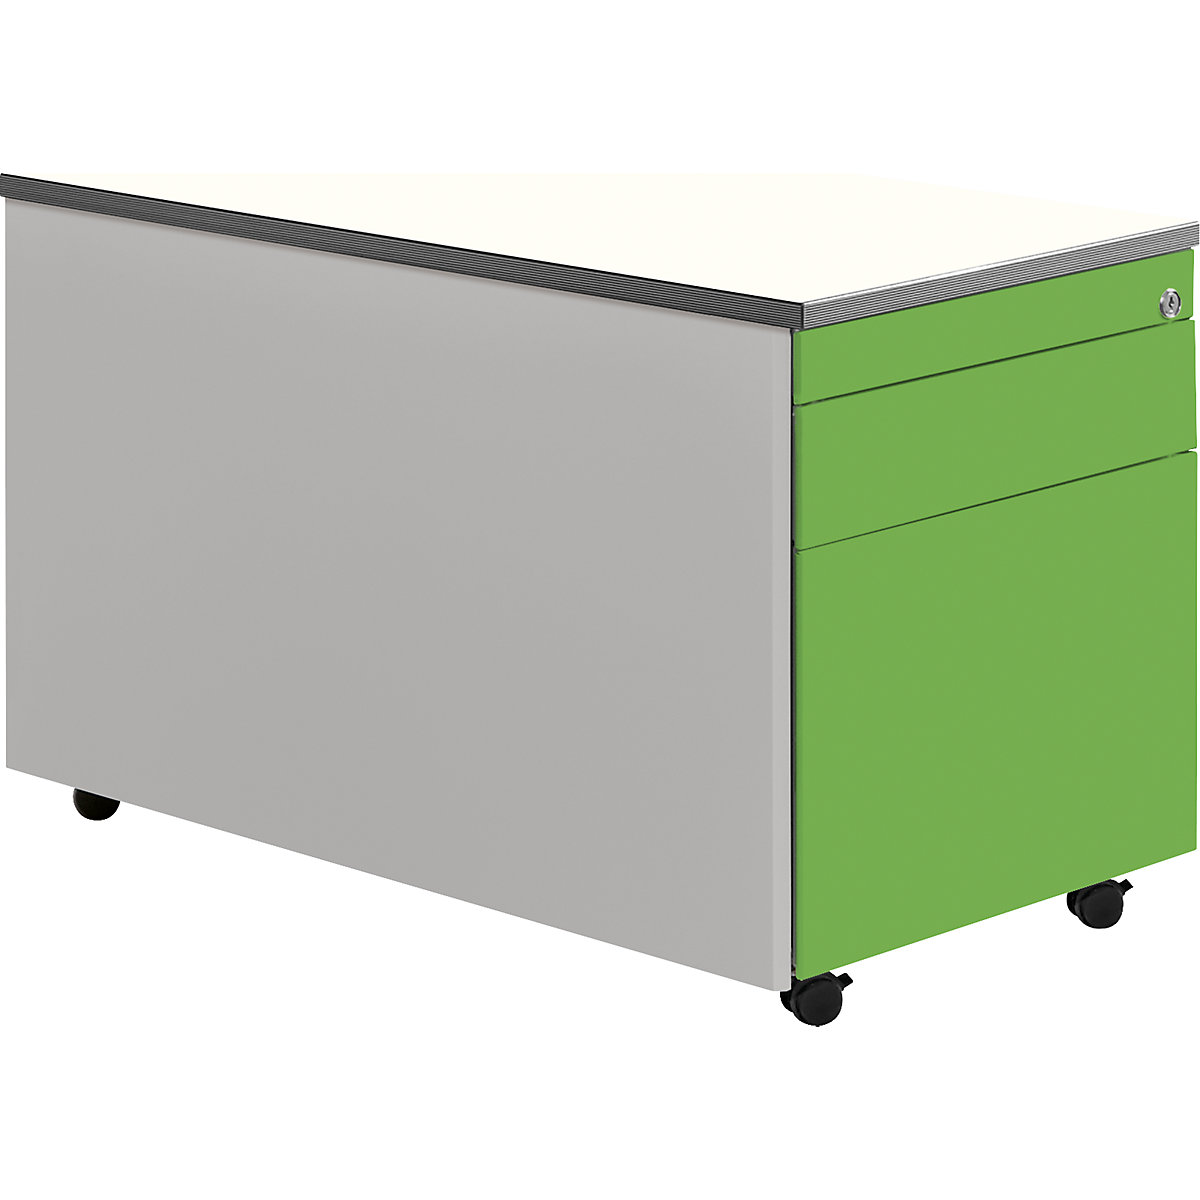 Zásuvkový kontajner s kolieskami – mauser, v x š 529 x 800 mm, 1 zásuvka na materiál, 1 závesná registratúra, strieborná / žltozelená / biela-6